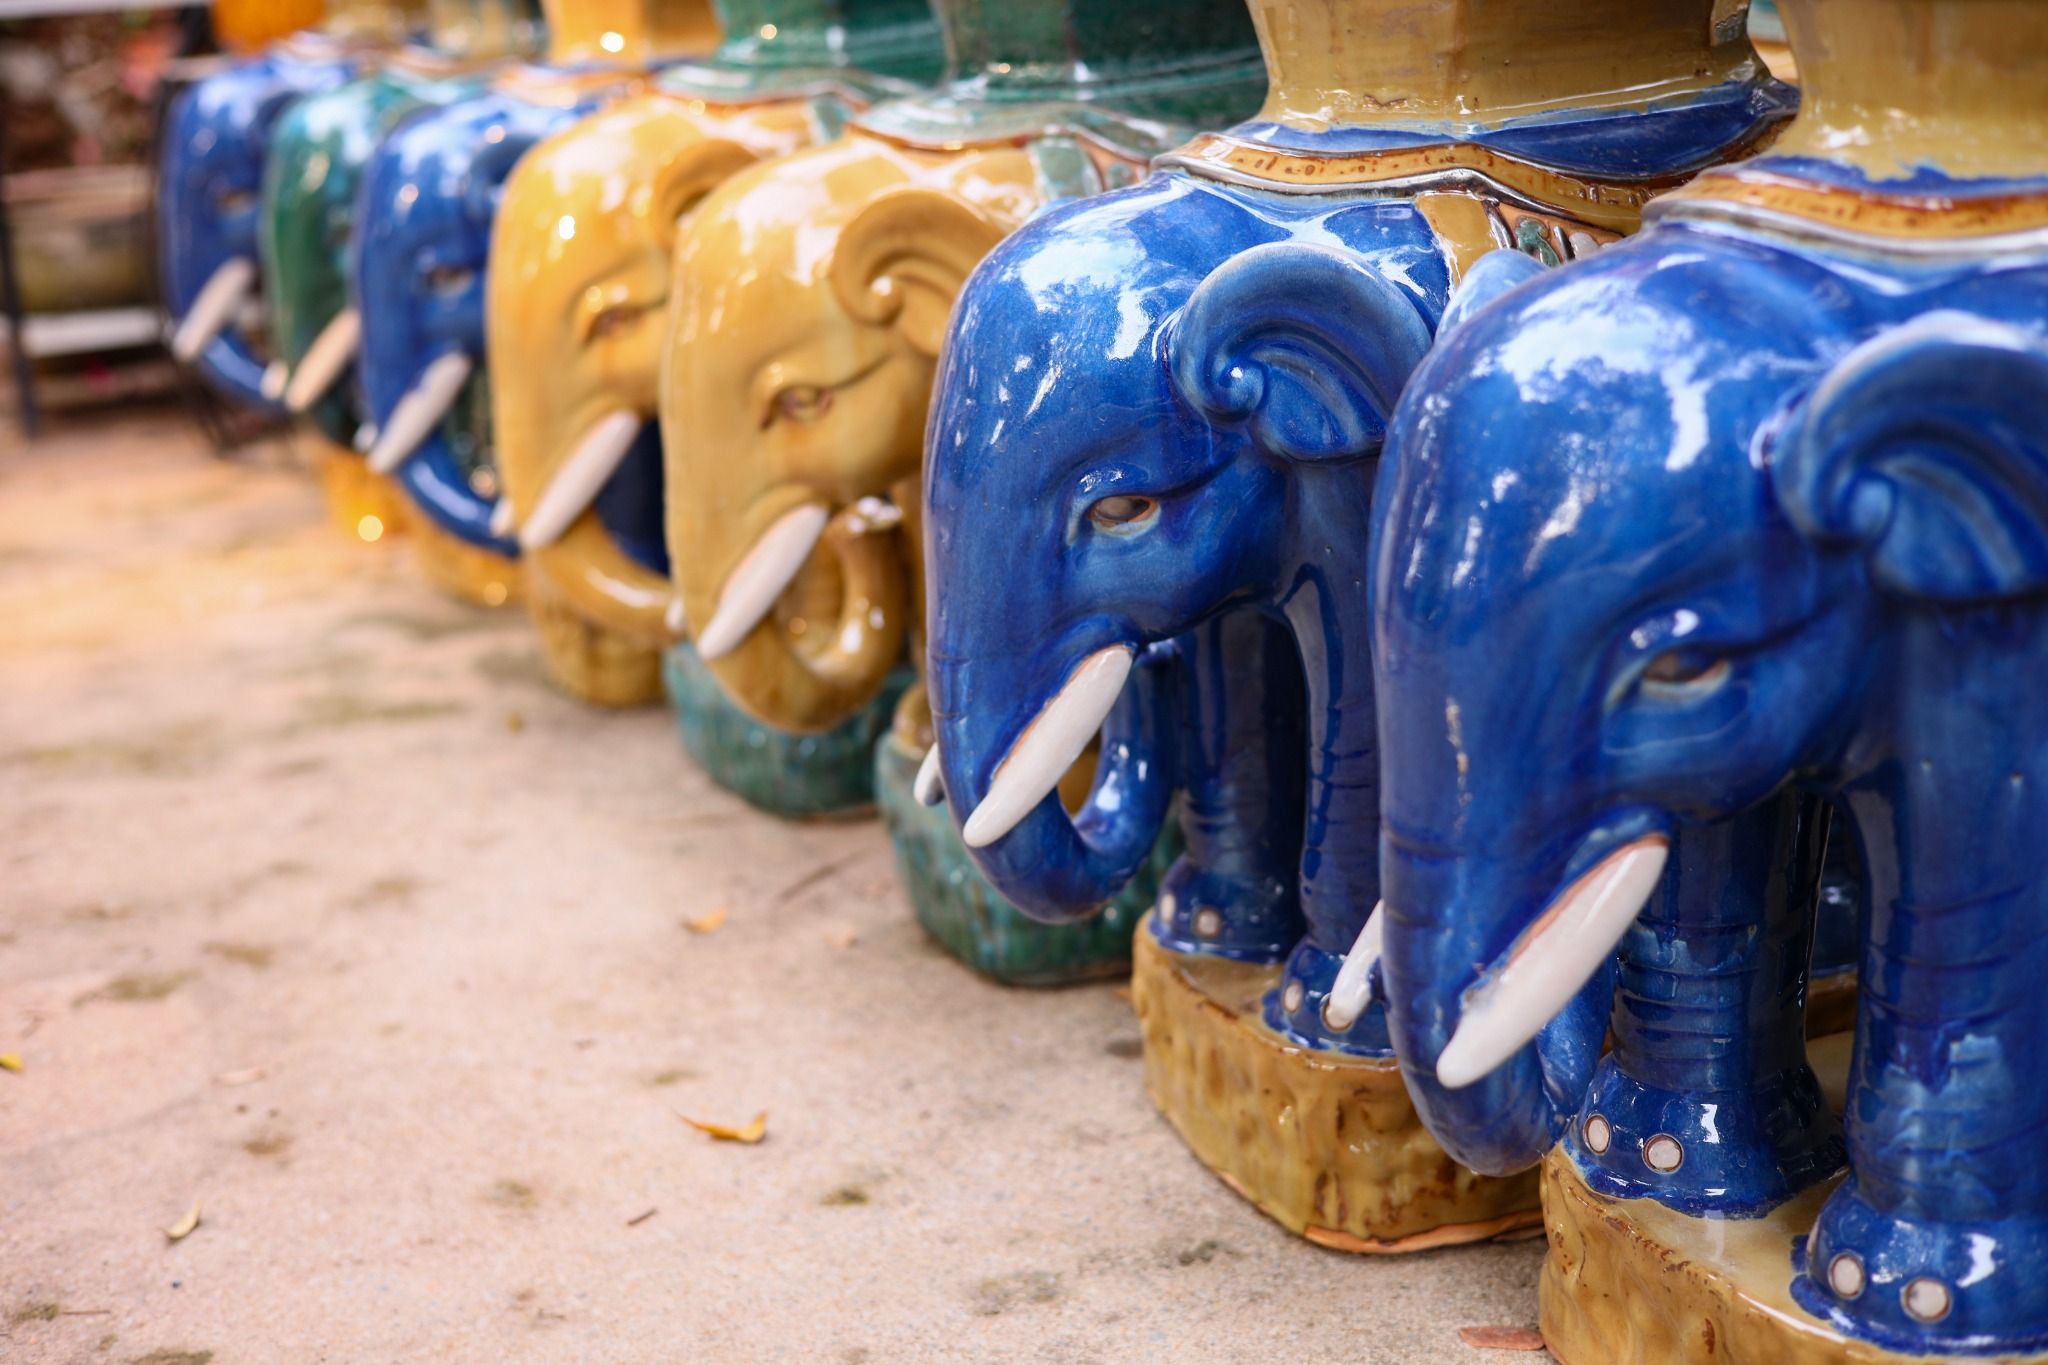  Đôn voi truyền thống, đôn voi trọc, gốm Nam Bộ, gợi nhớ ký ức, nhiều màu sắc, H60xR50cm 